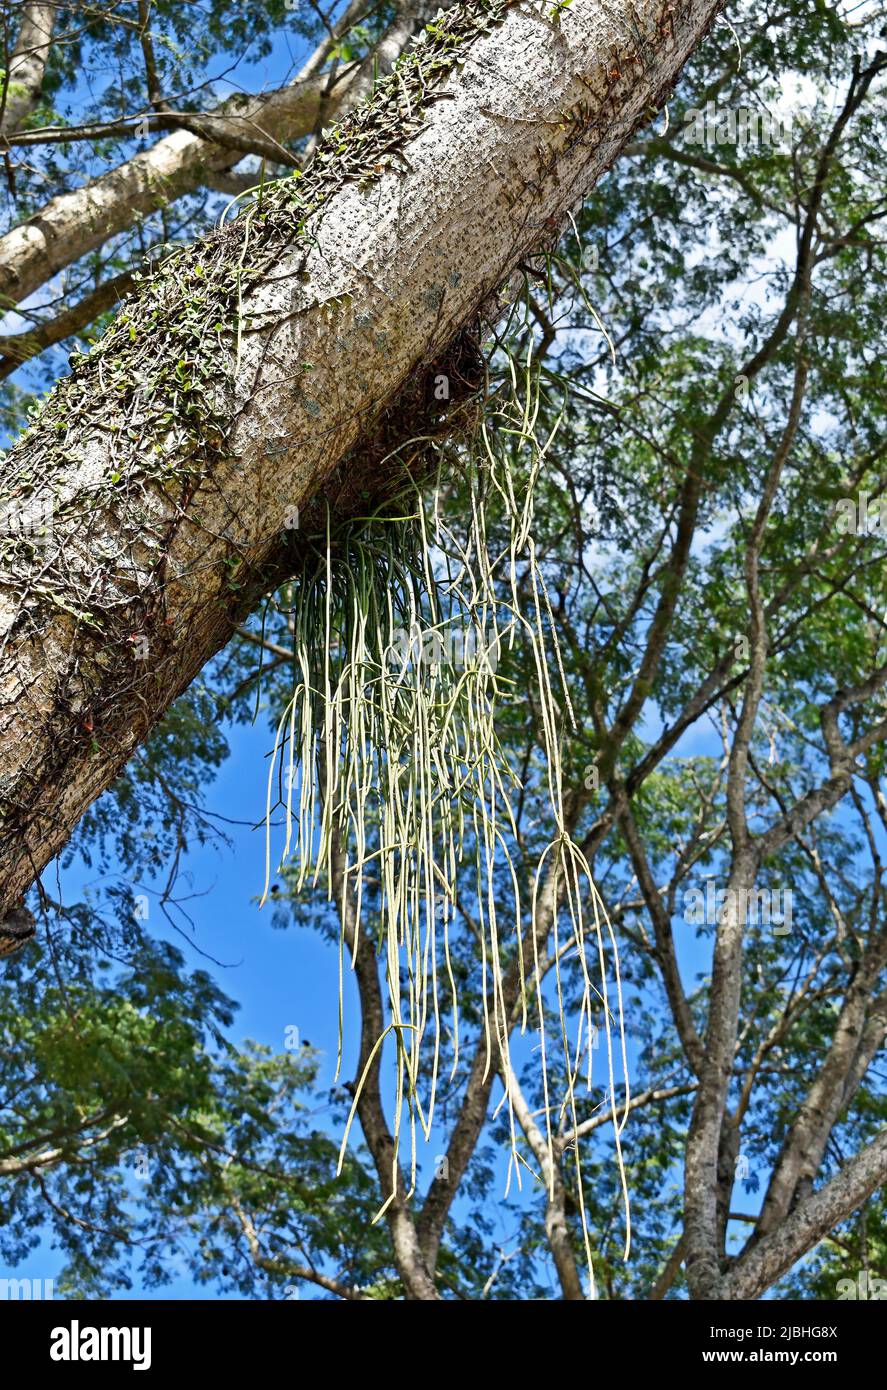 Cactus de muérdago en tronco de árbol (Rhipsalis baccifera) Foto de stock